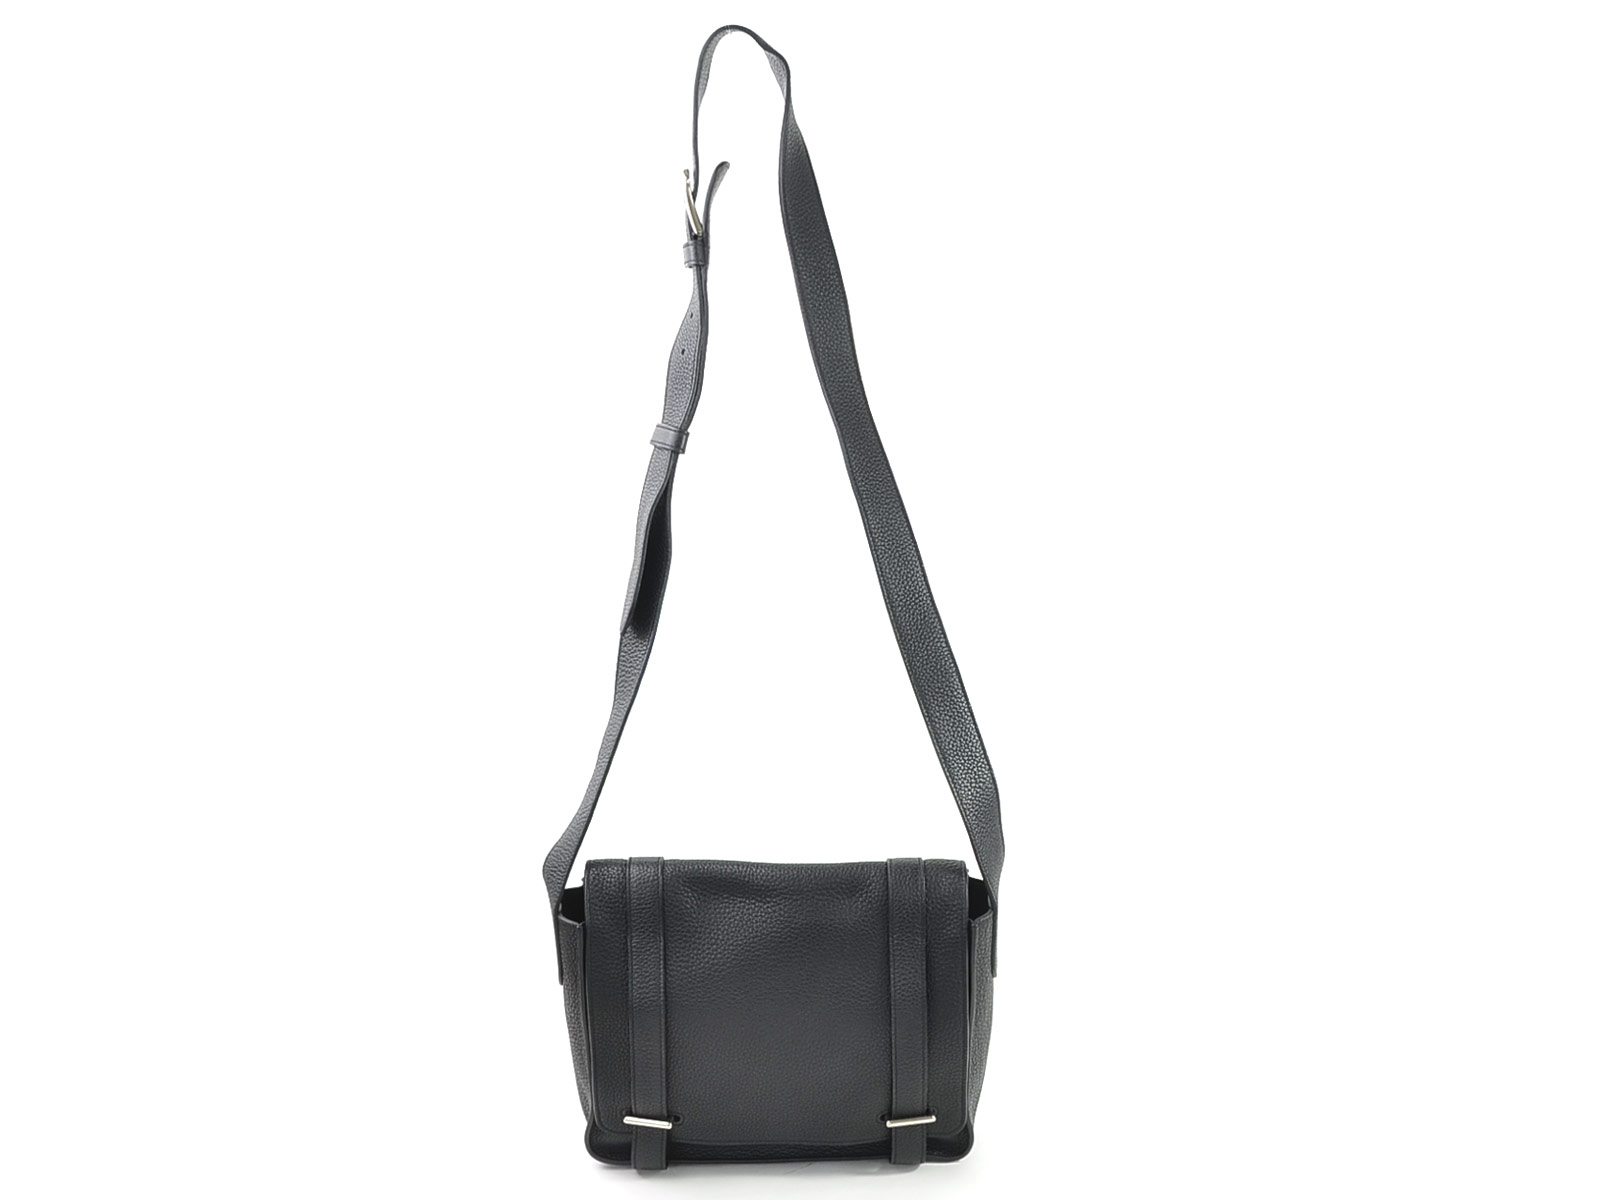 Auth HERMES Steve Caporal Messenger Bag Crossbody Shoulder Bag Black - 97992c | eBay